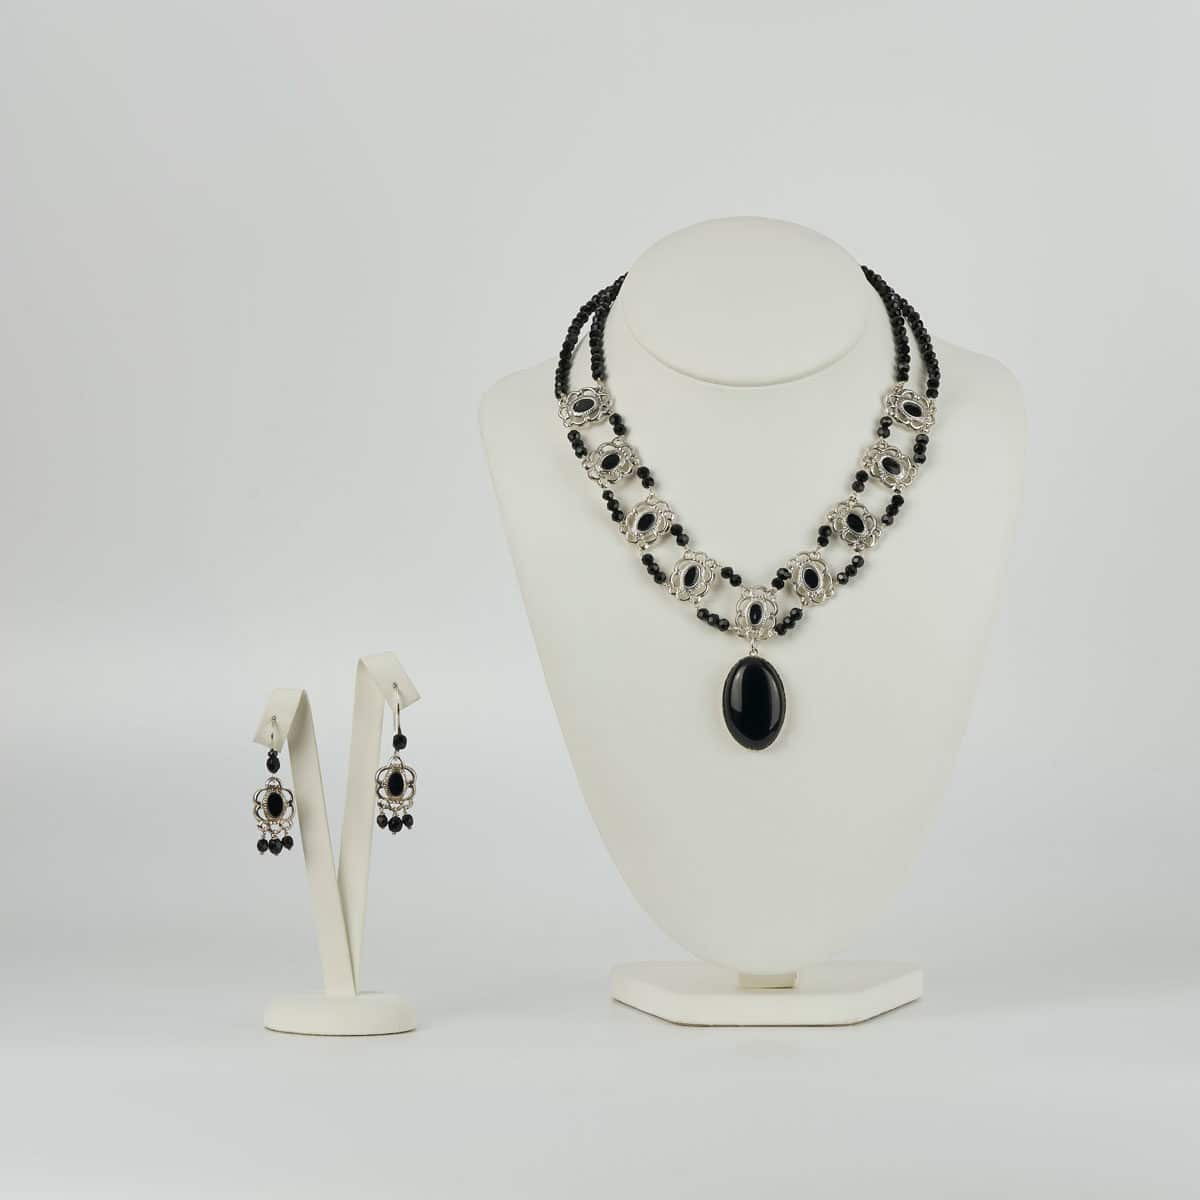 conjunto de diseño modelo Raíña, joyería de diseño en plata con esmalte al fuego y onix, joyas siliva.